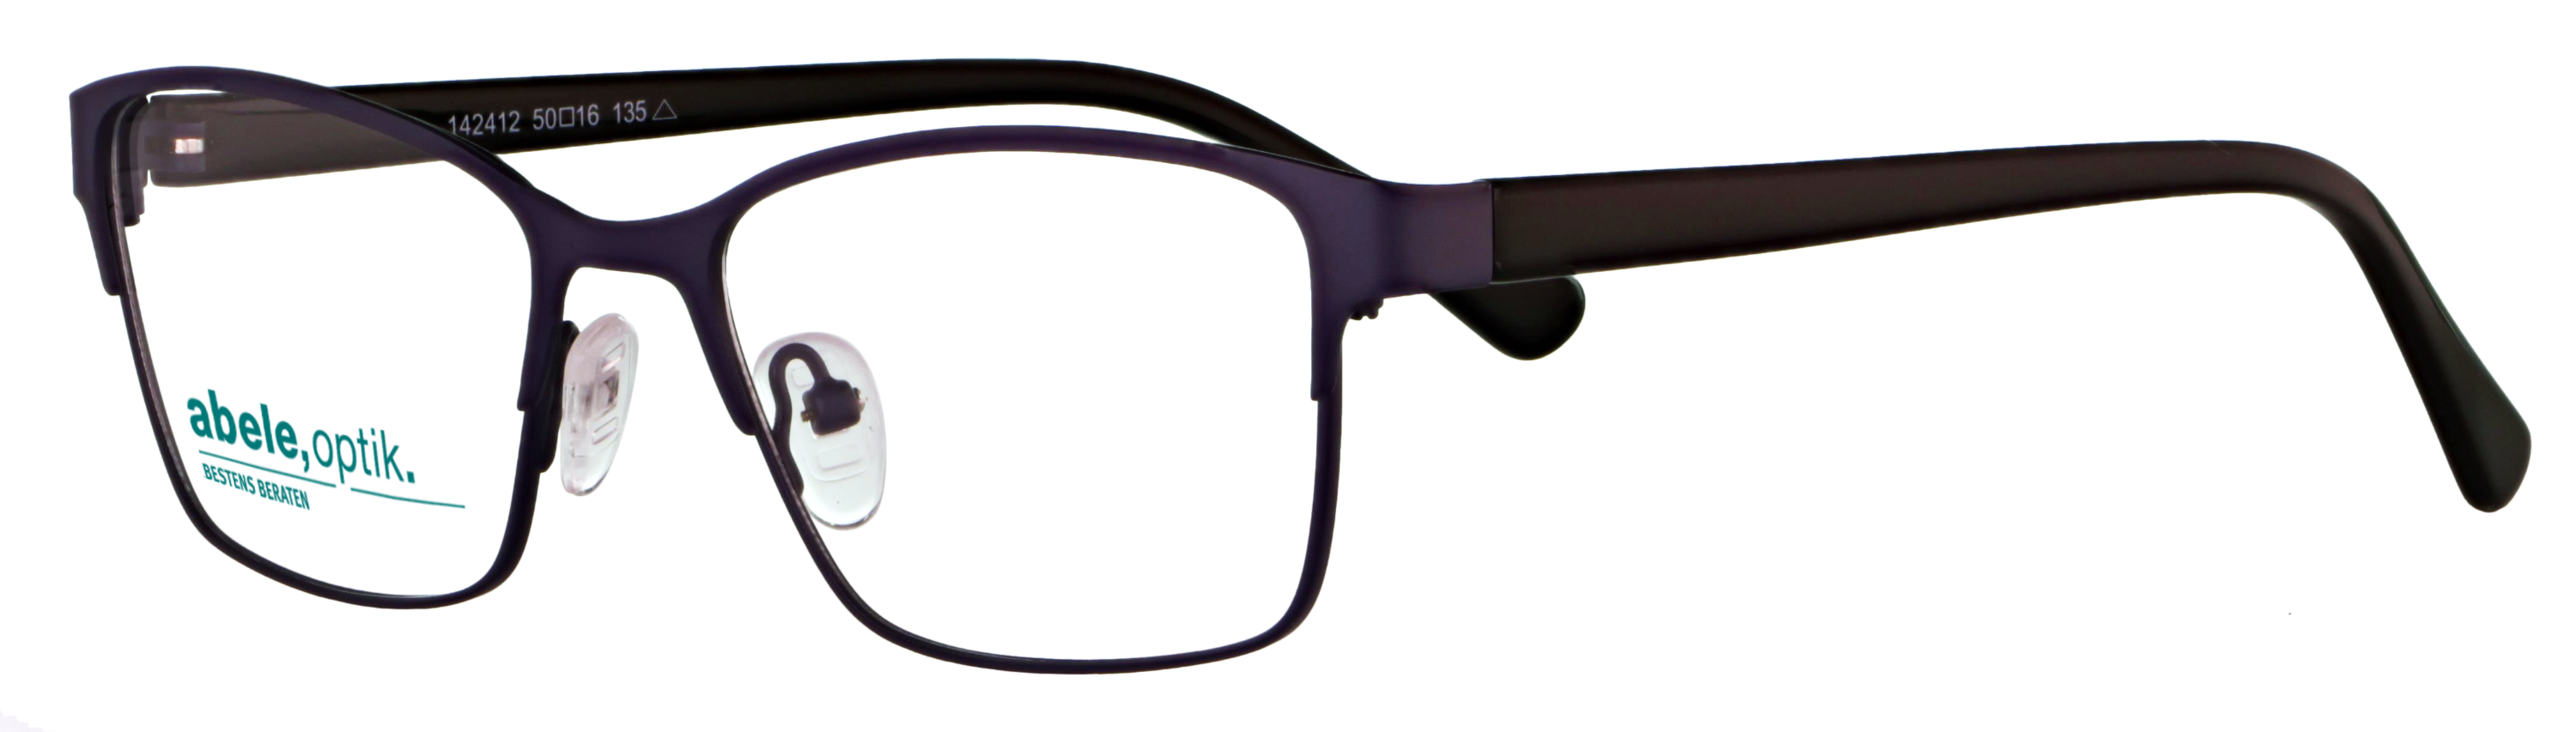 Das Bild zeigt die Korrektionsbrille 142412 von der Marke Abele Optik in lila matt.